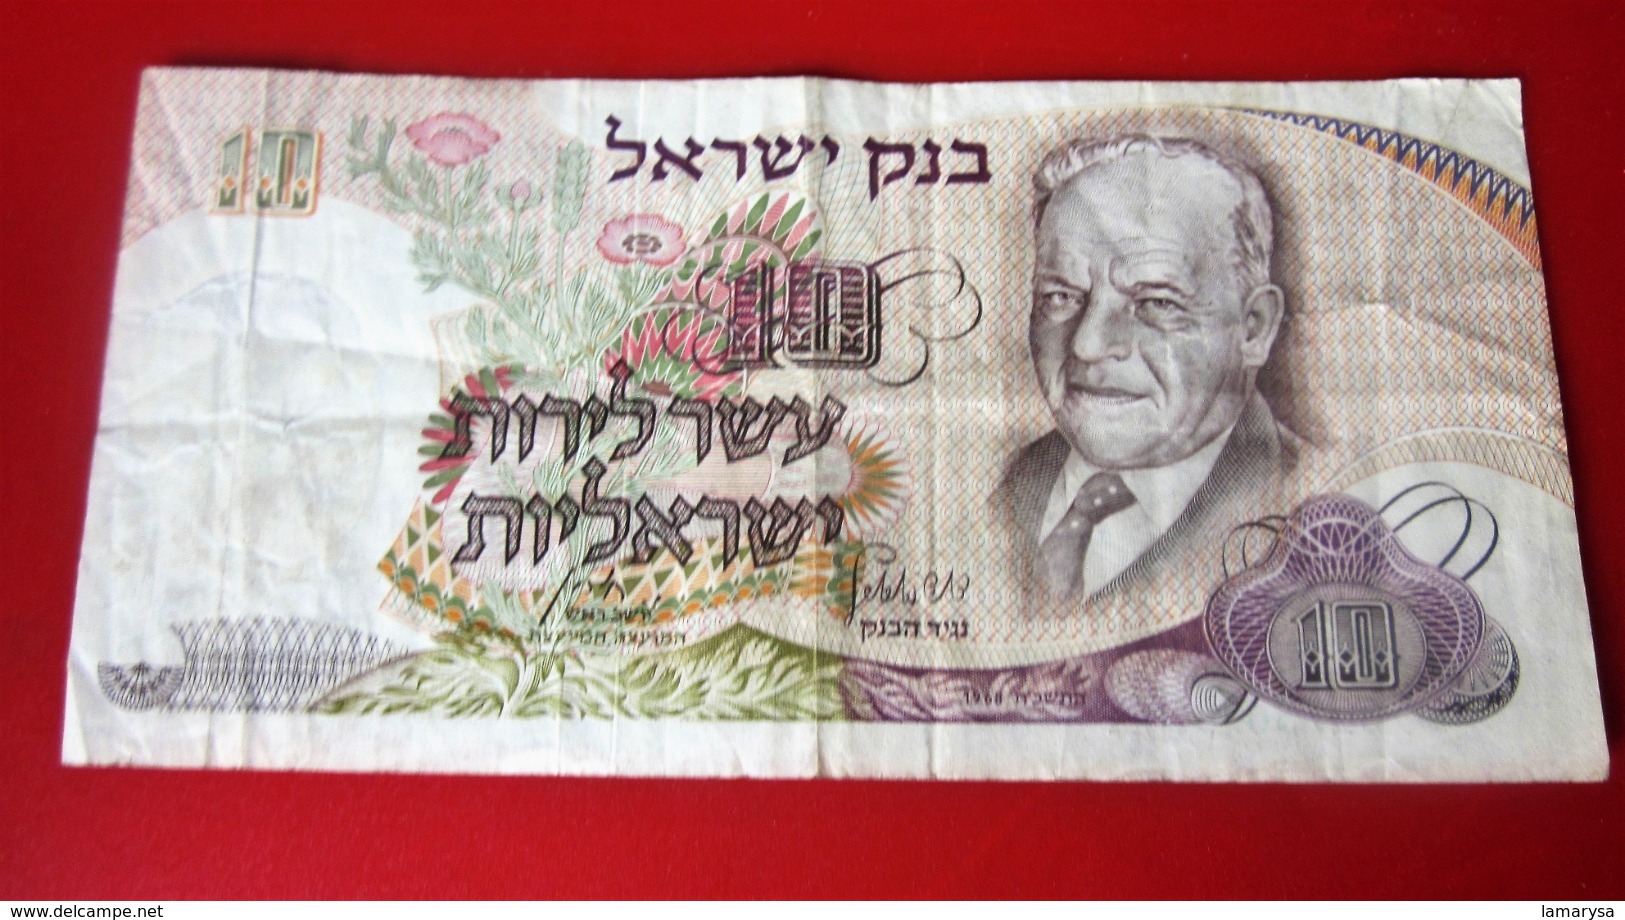 המץ ליוט ישראל  1968  BILLET DE BANQUE BANK OF ISRAËL 10  LIRES ESSER LIROT ISRAELI  כרטיס בנק   BANK TICKET - Israel